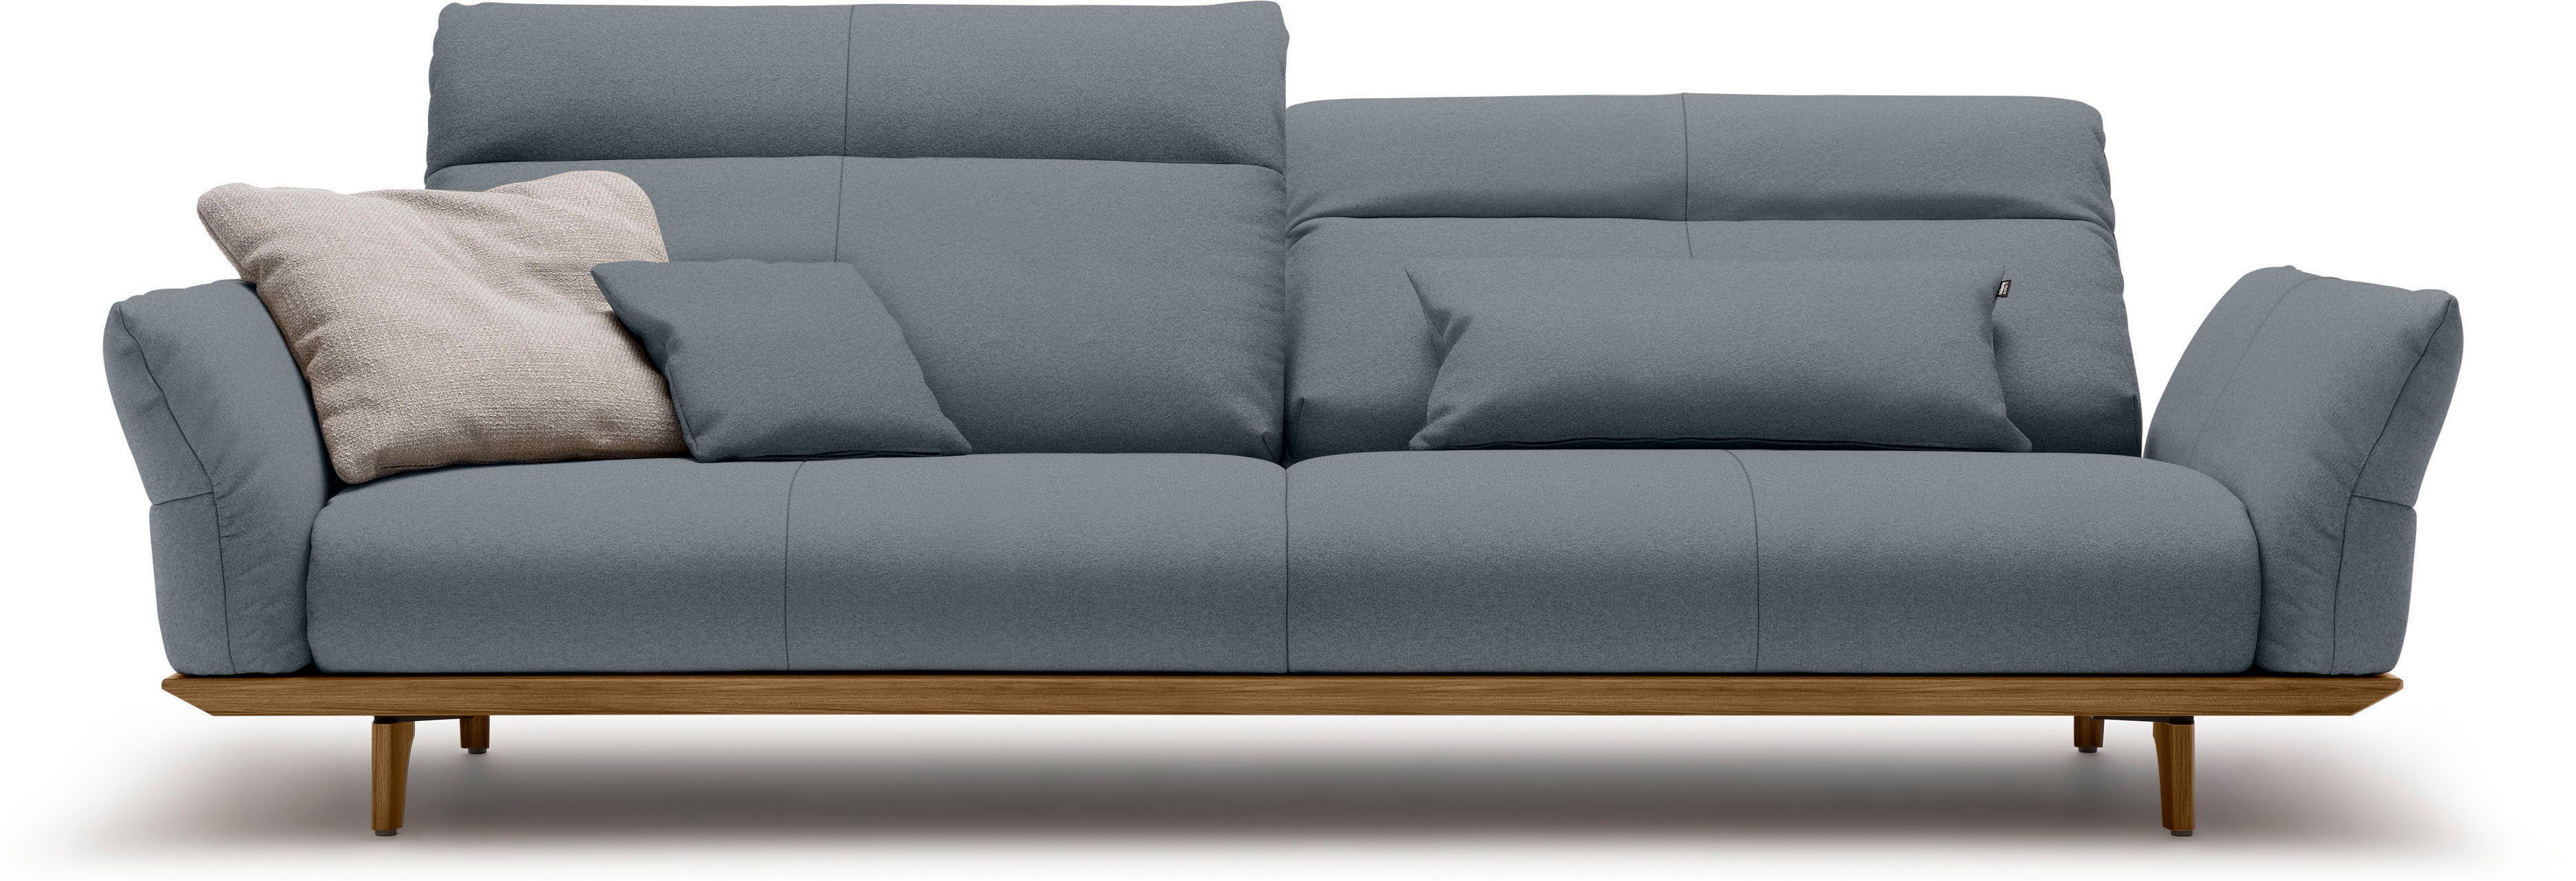 in Breite 4-Sitzer Nussbaum, Füße Sockel 248 sofa Nussbaum, hs.460, cm hülsta